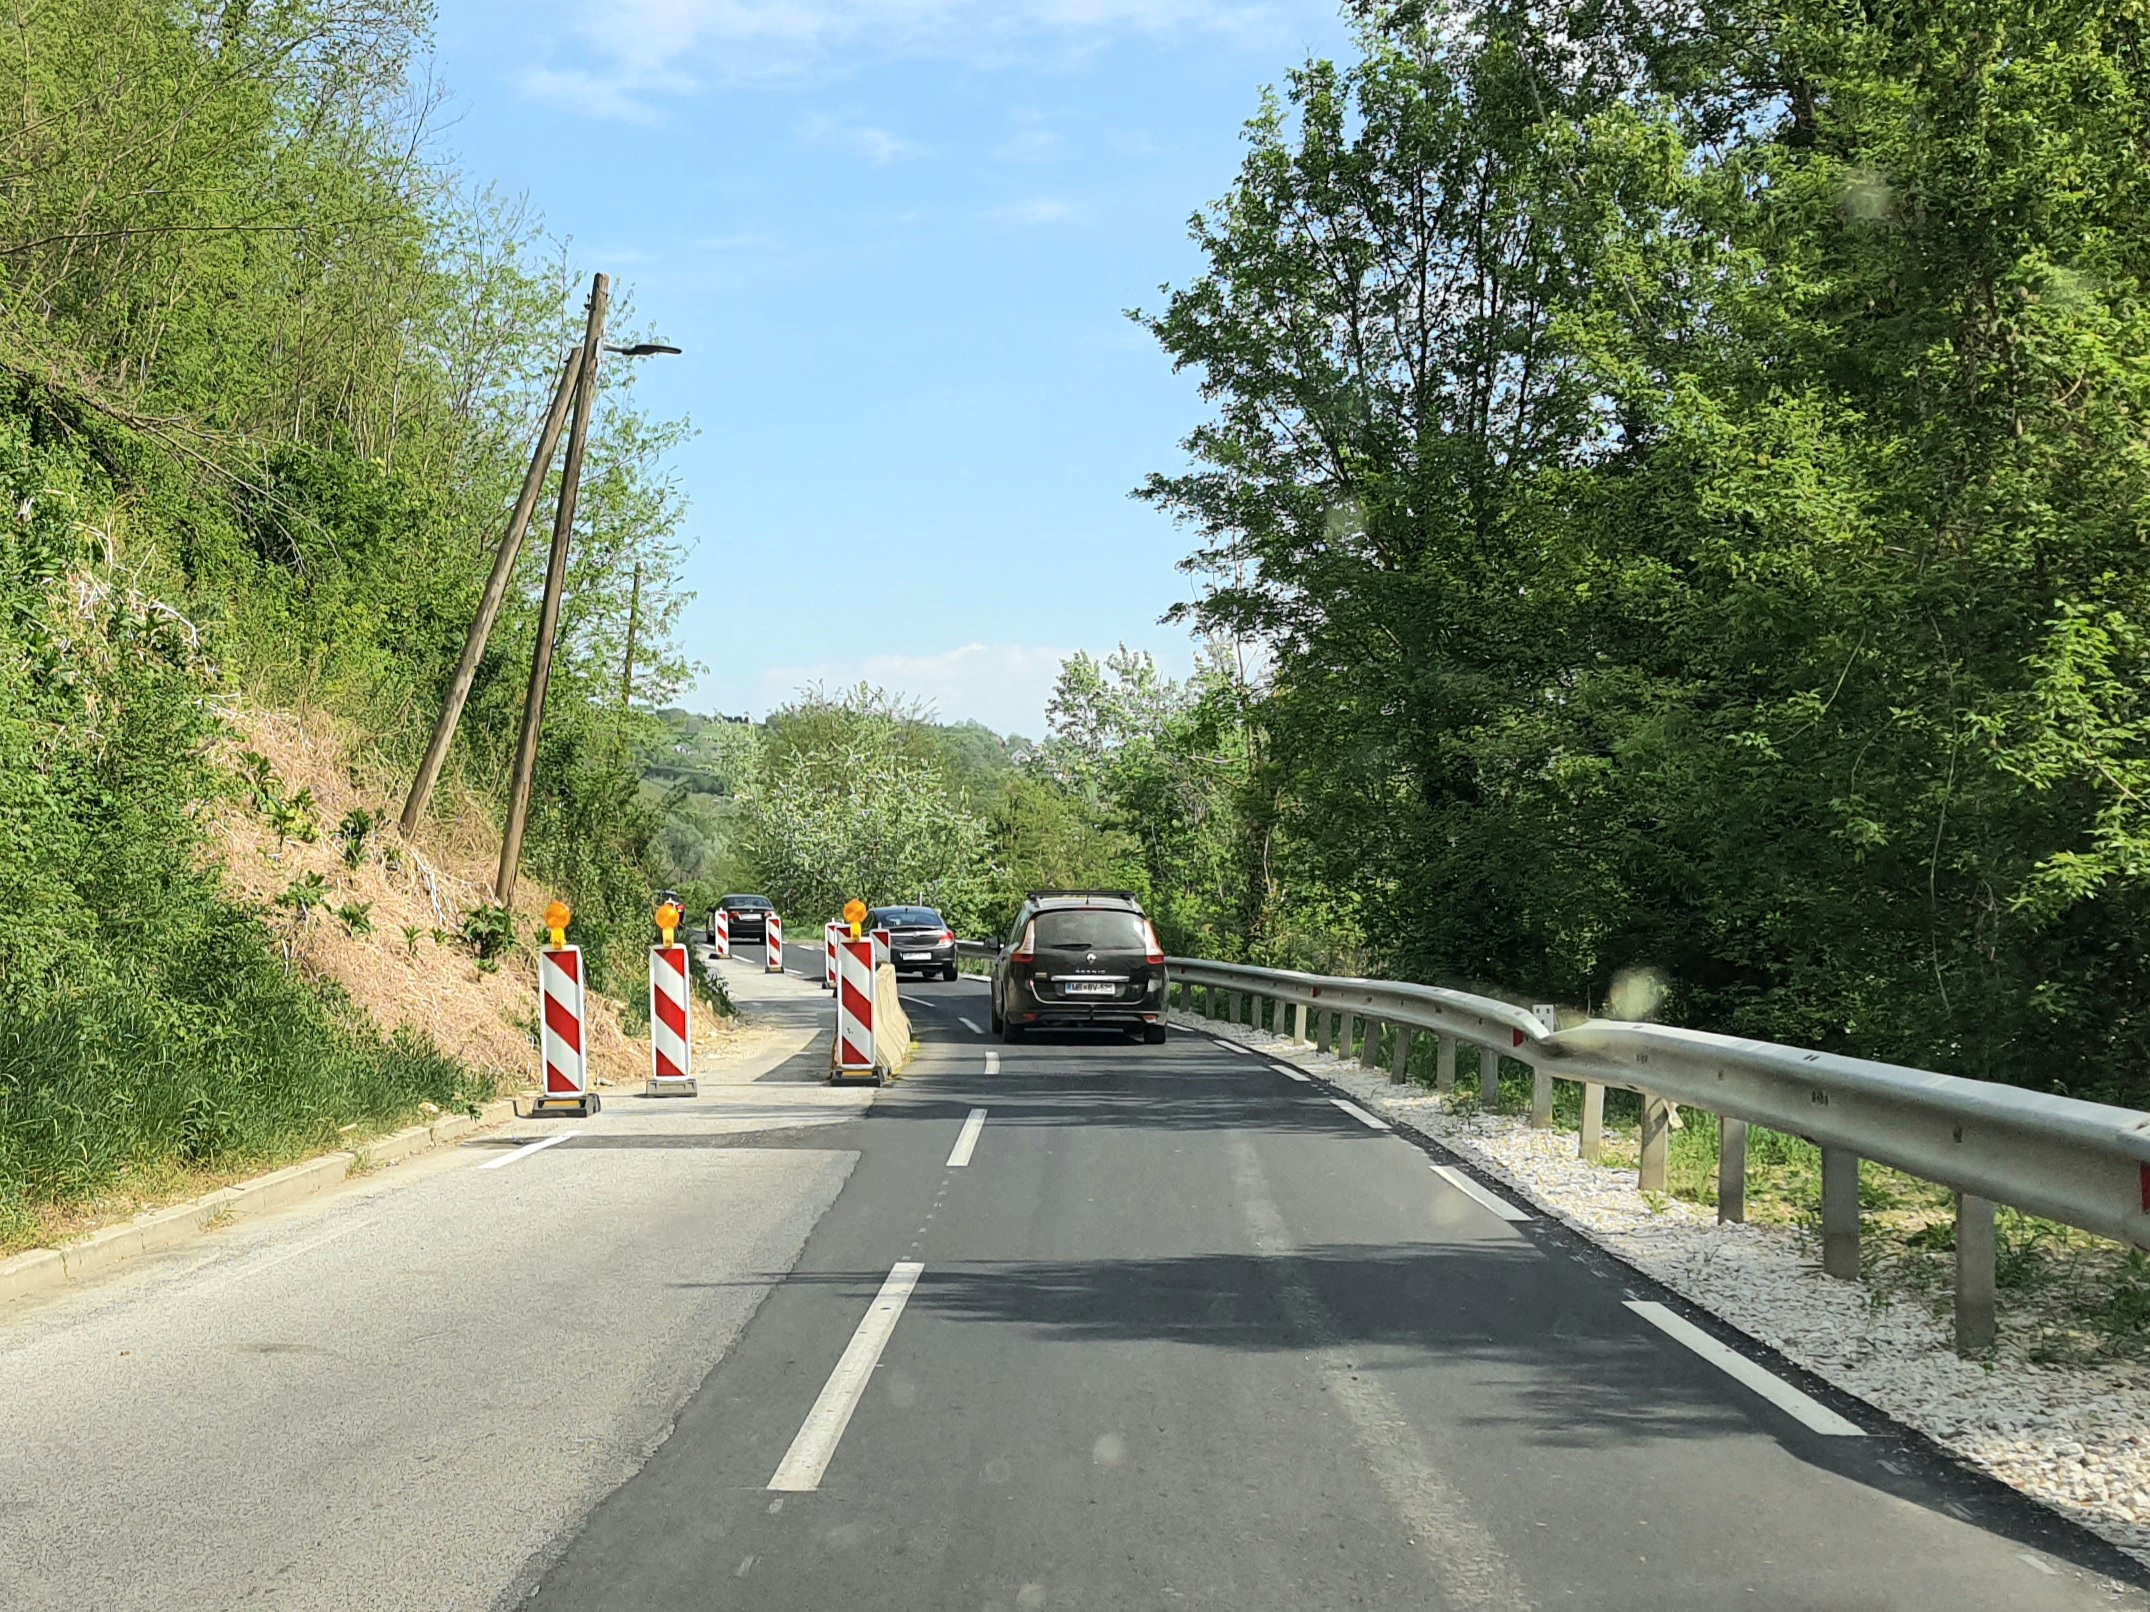 Ali bo ministrica Bratušek prisluhnila pozivom prebivalcev Malečnika in poskrbela za varne ceste?